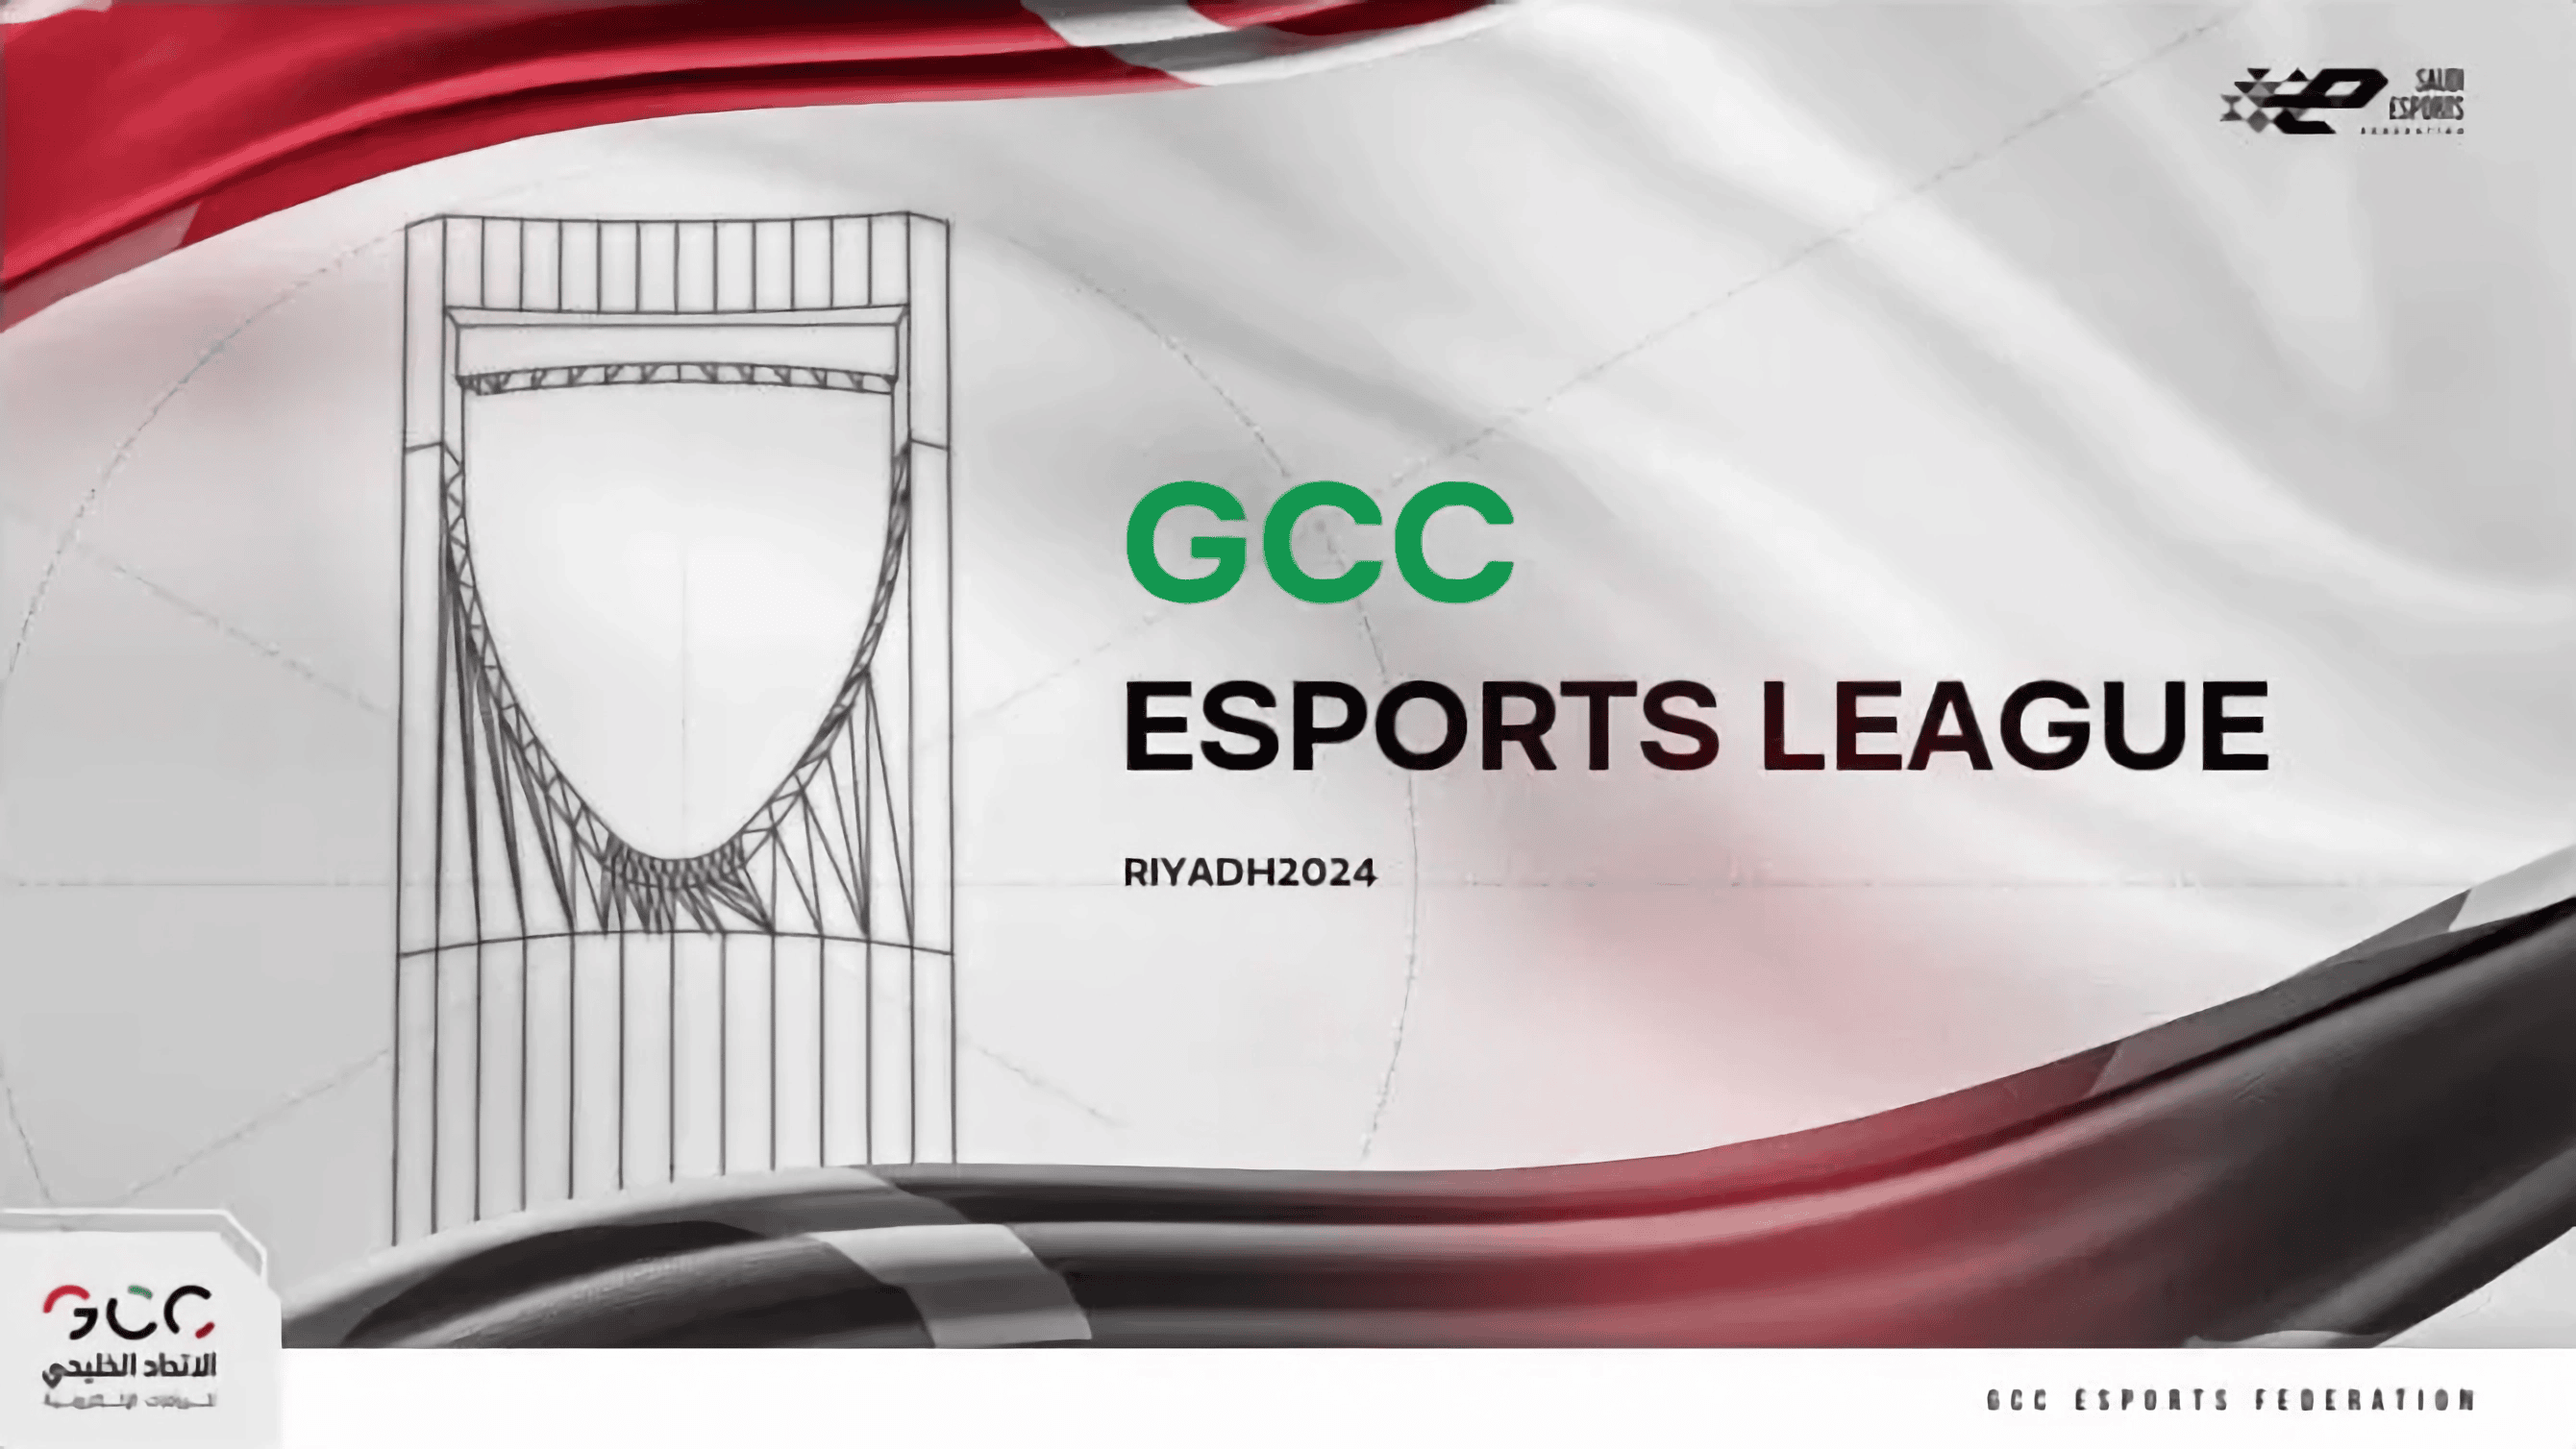 GCC Esports League Finals Head to Riyadh